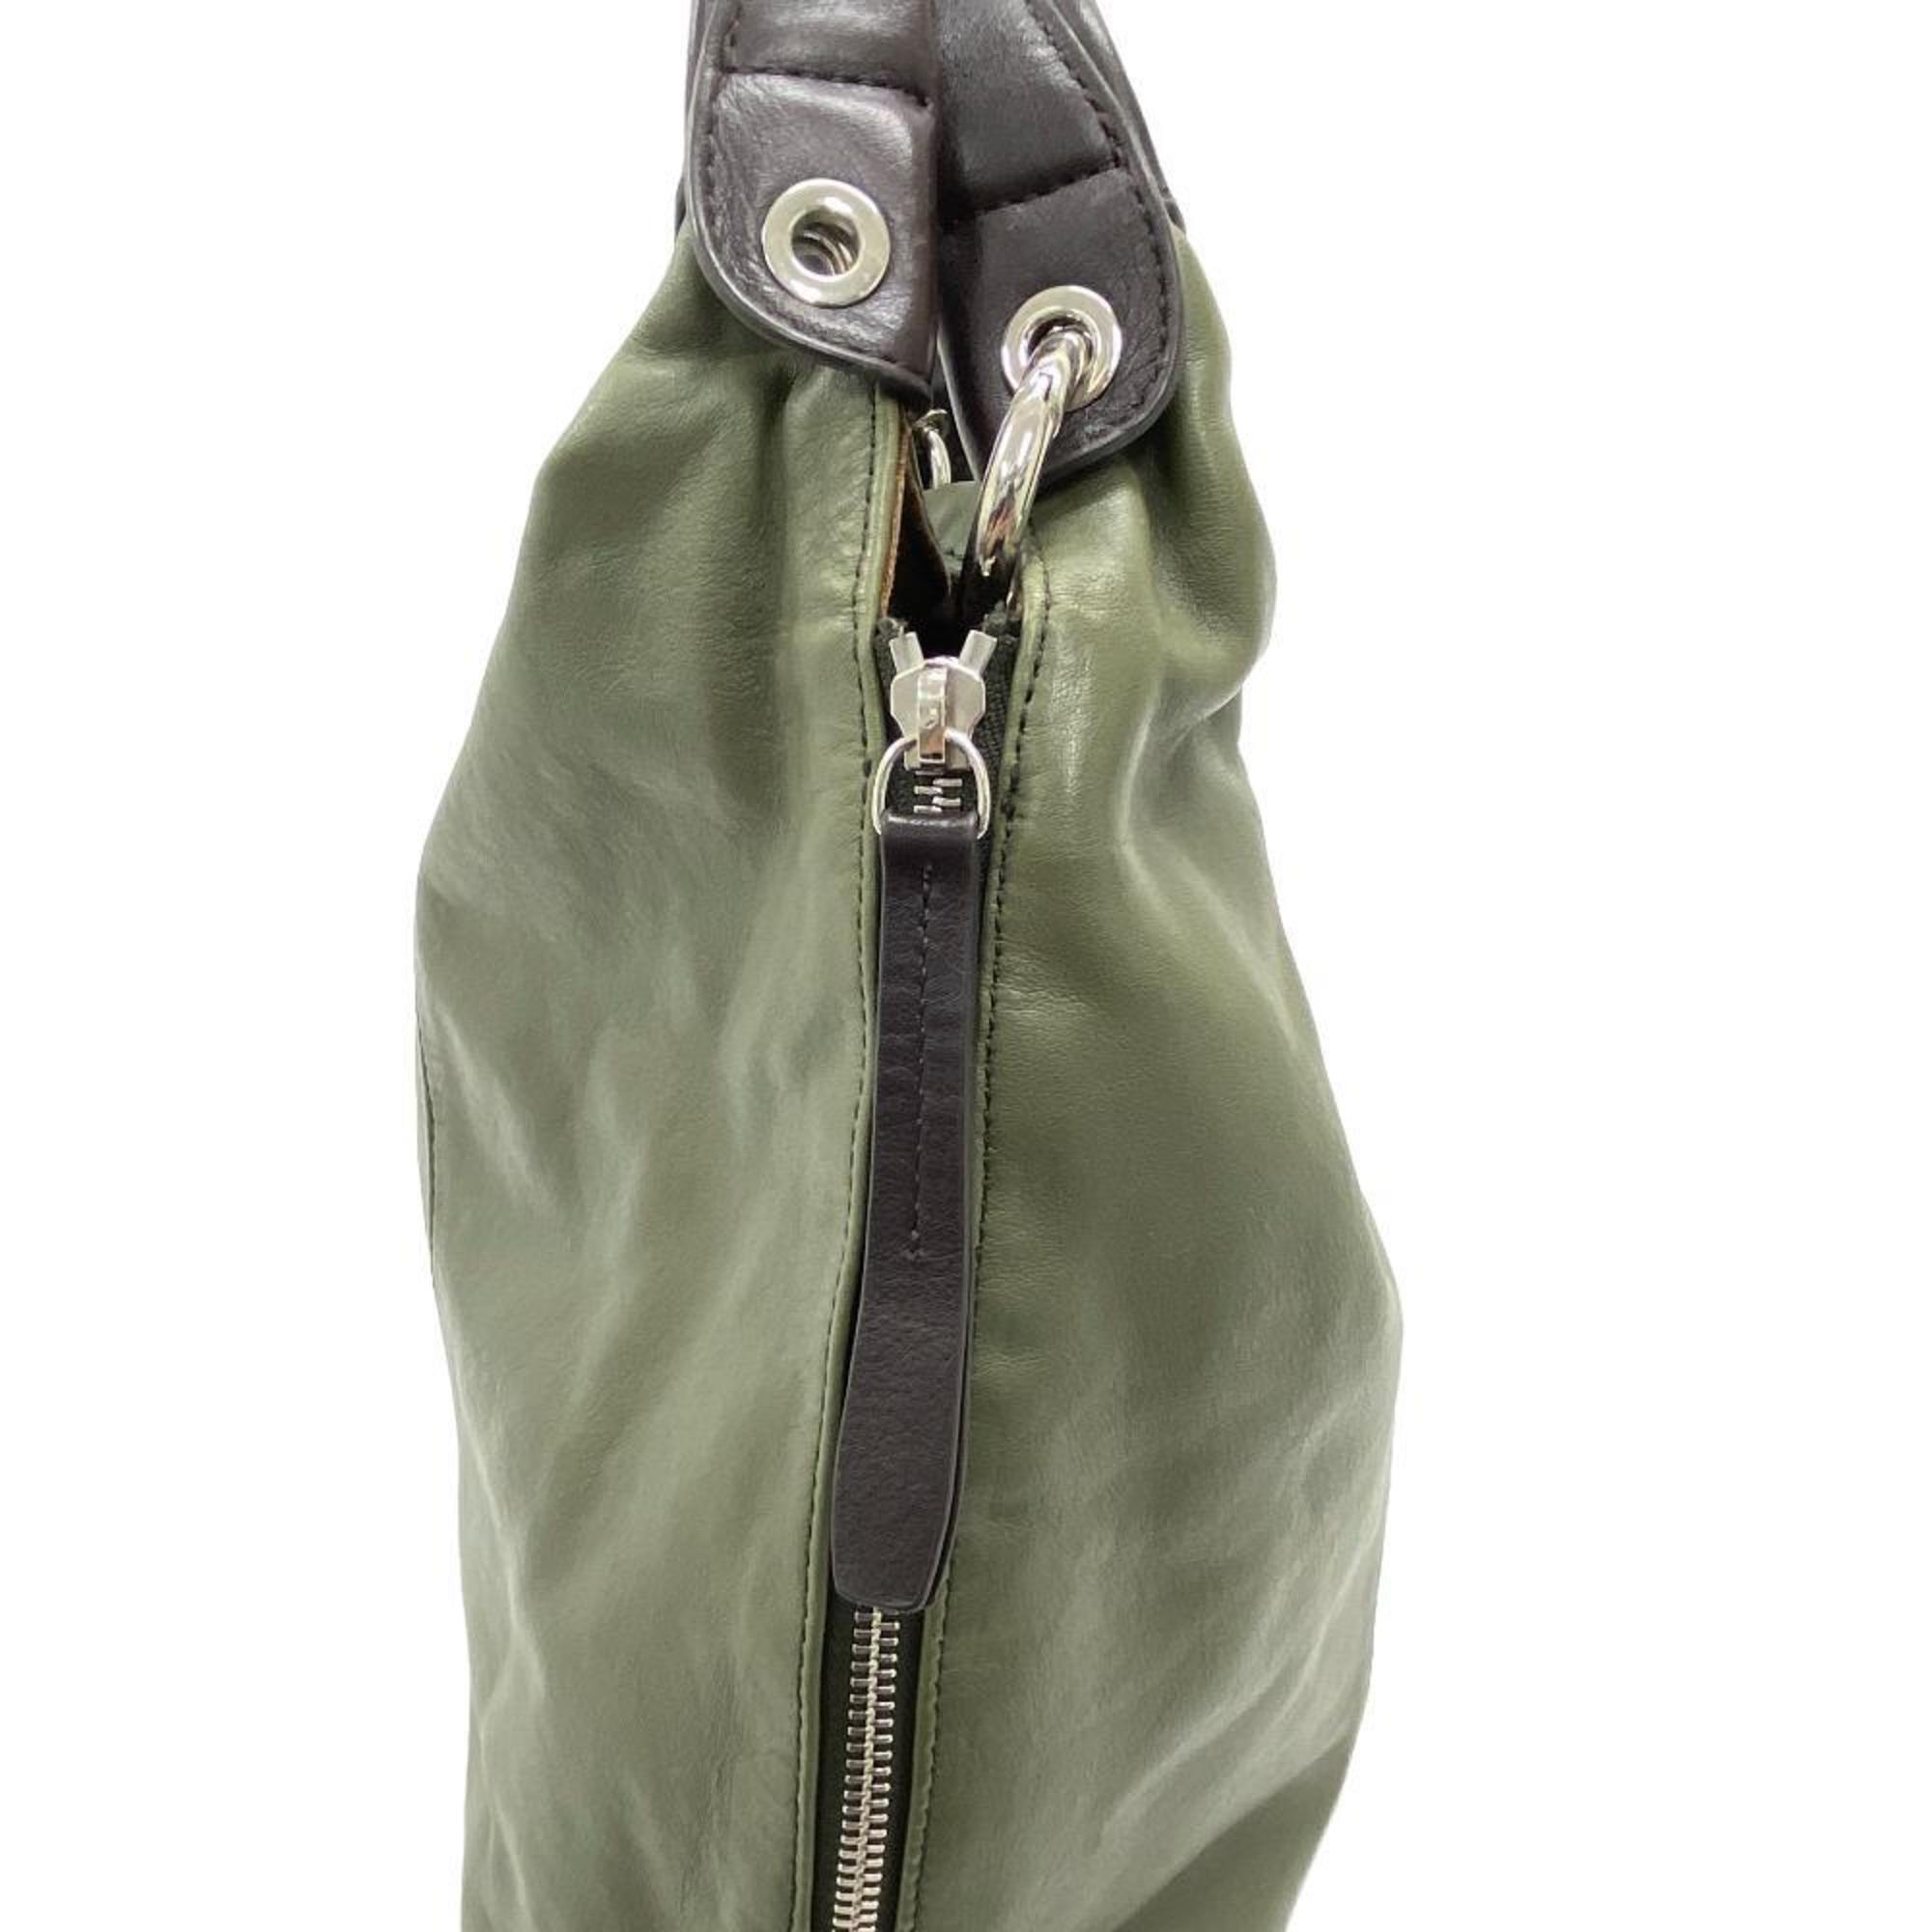 Furla Bicolor Handbag Khaki Women's Z0005775